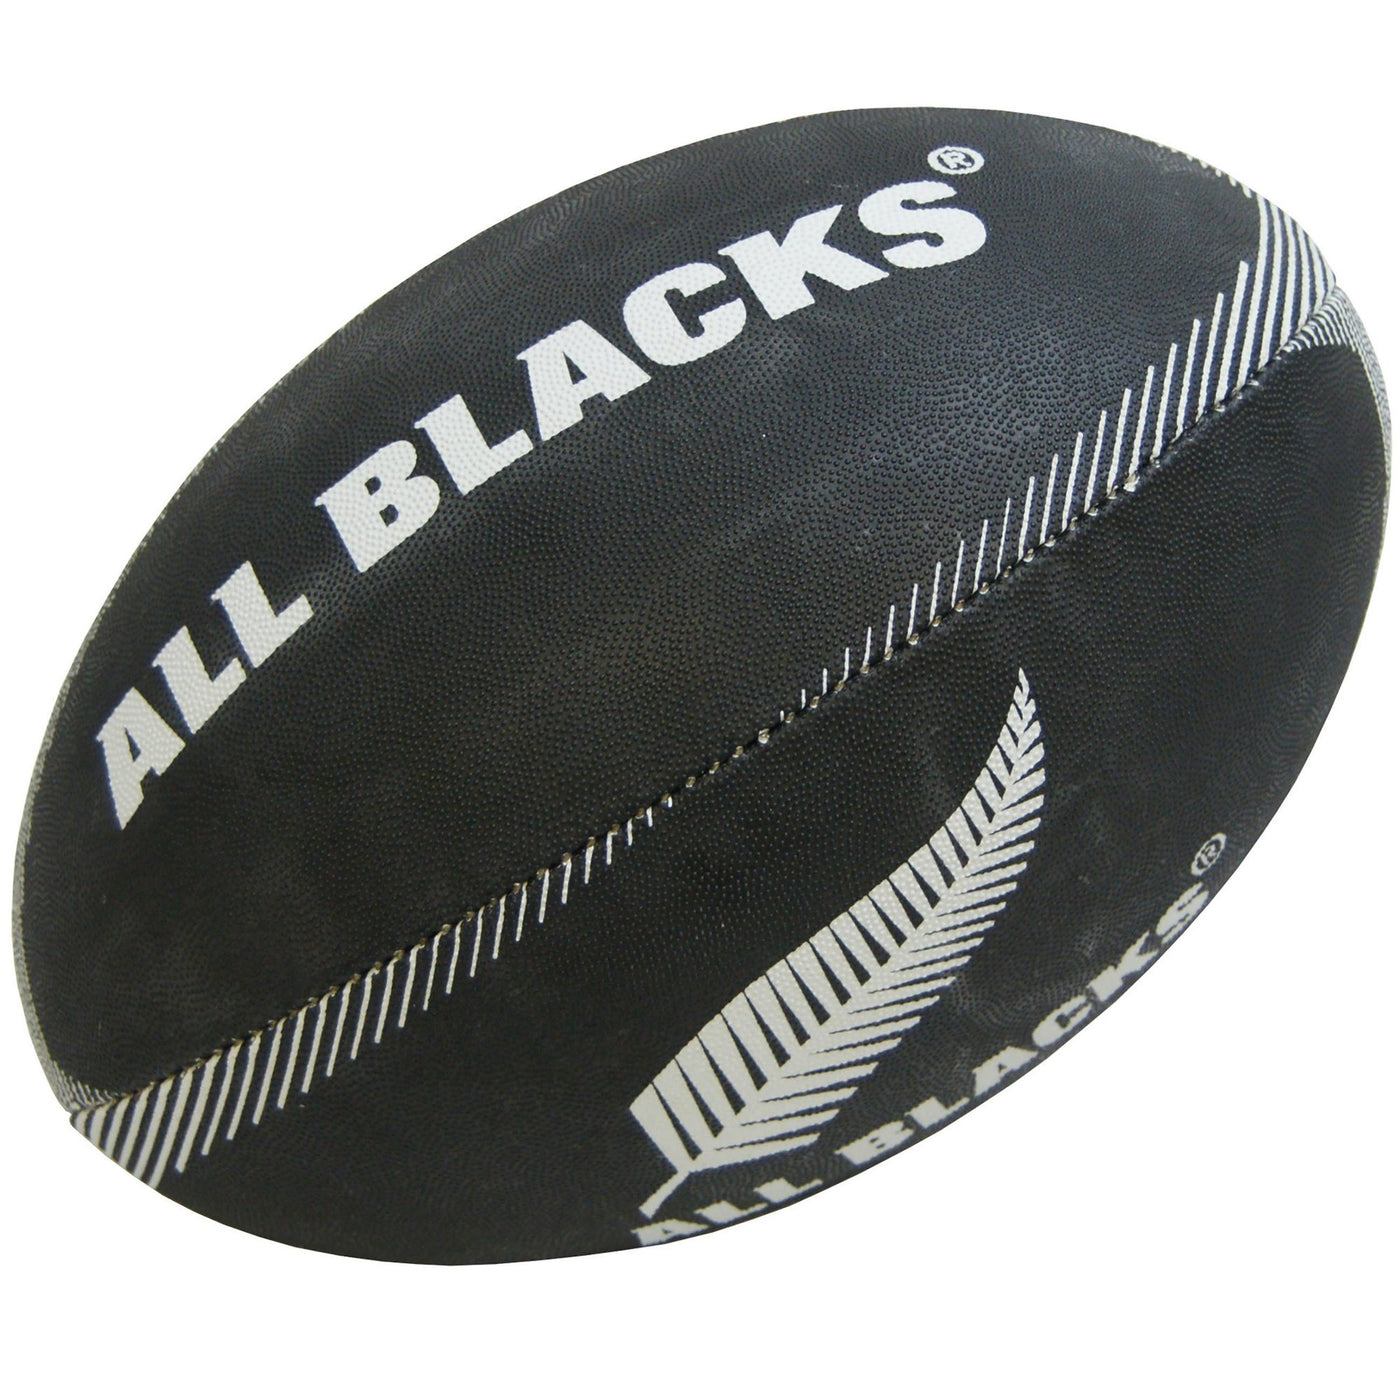 All Blacks Ballon de Rugby Taille 3